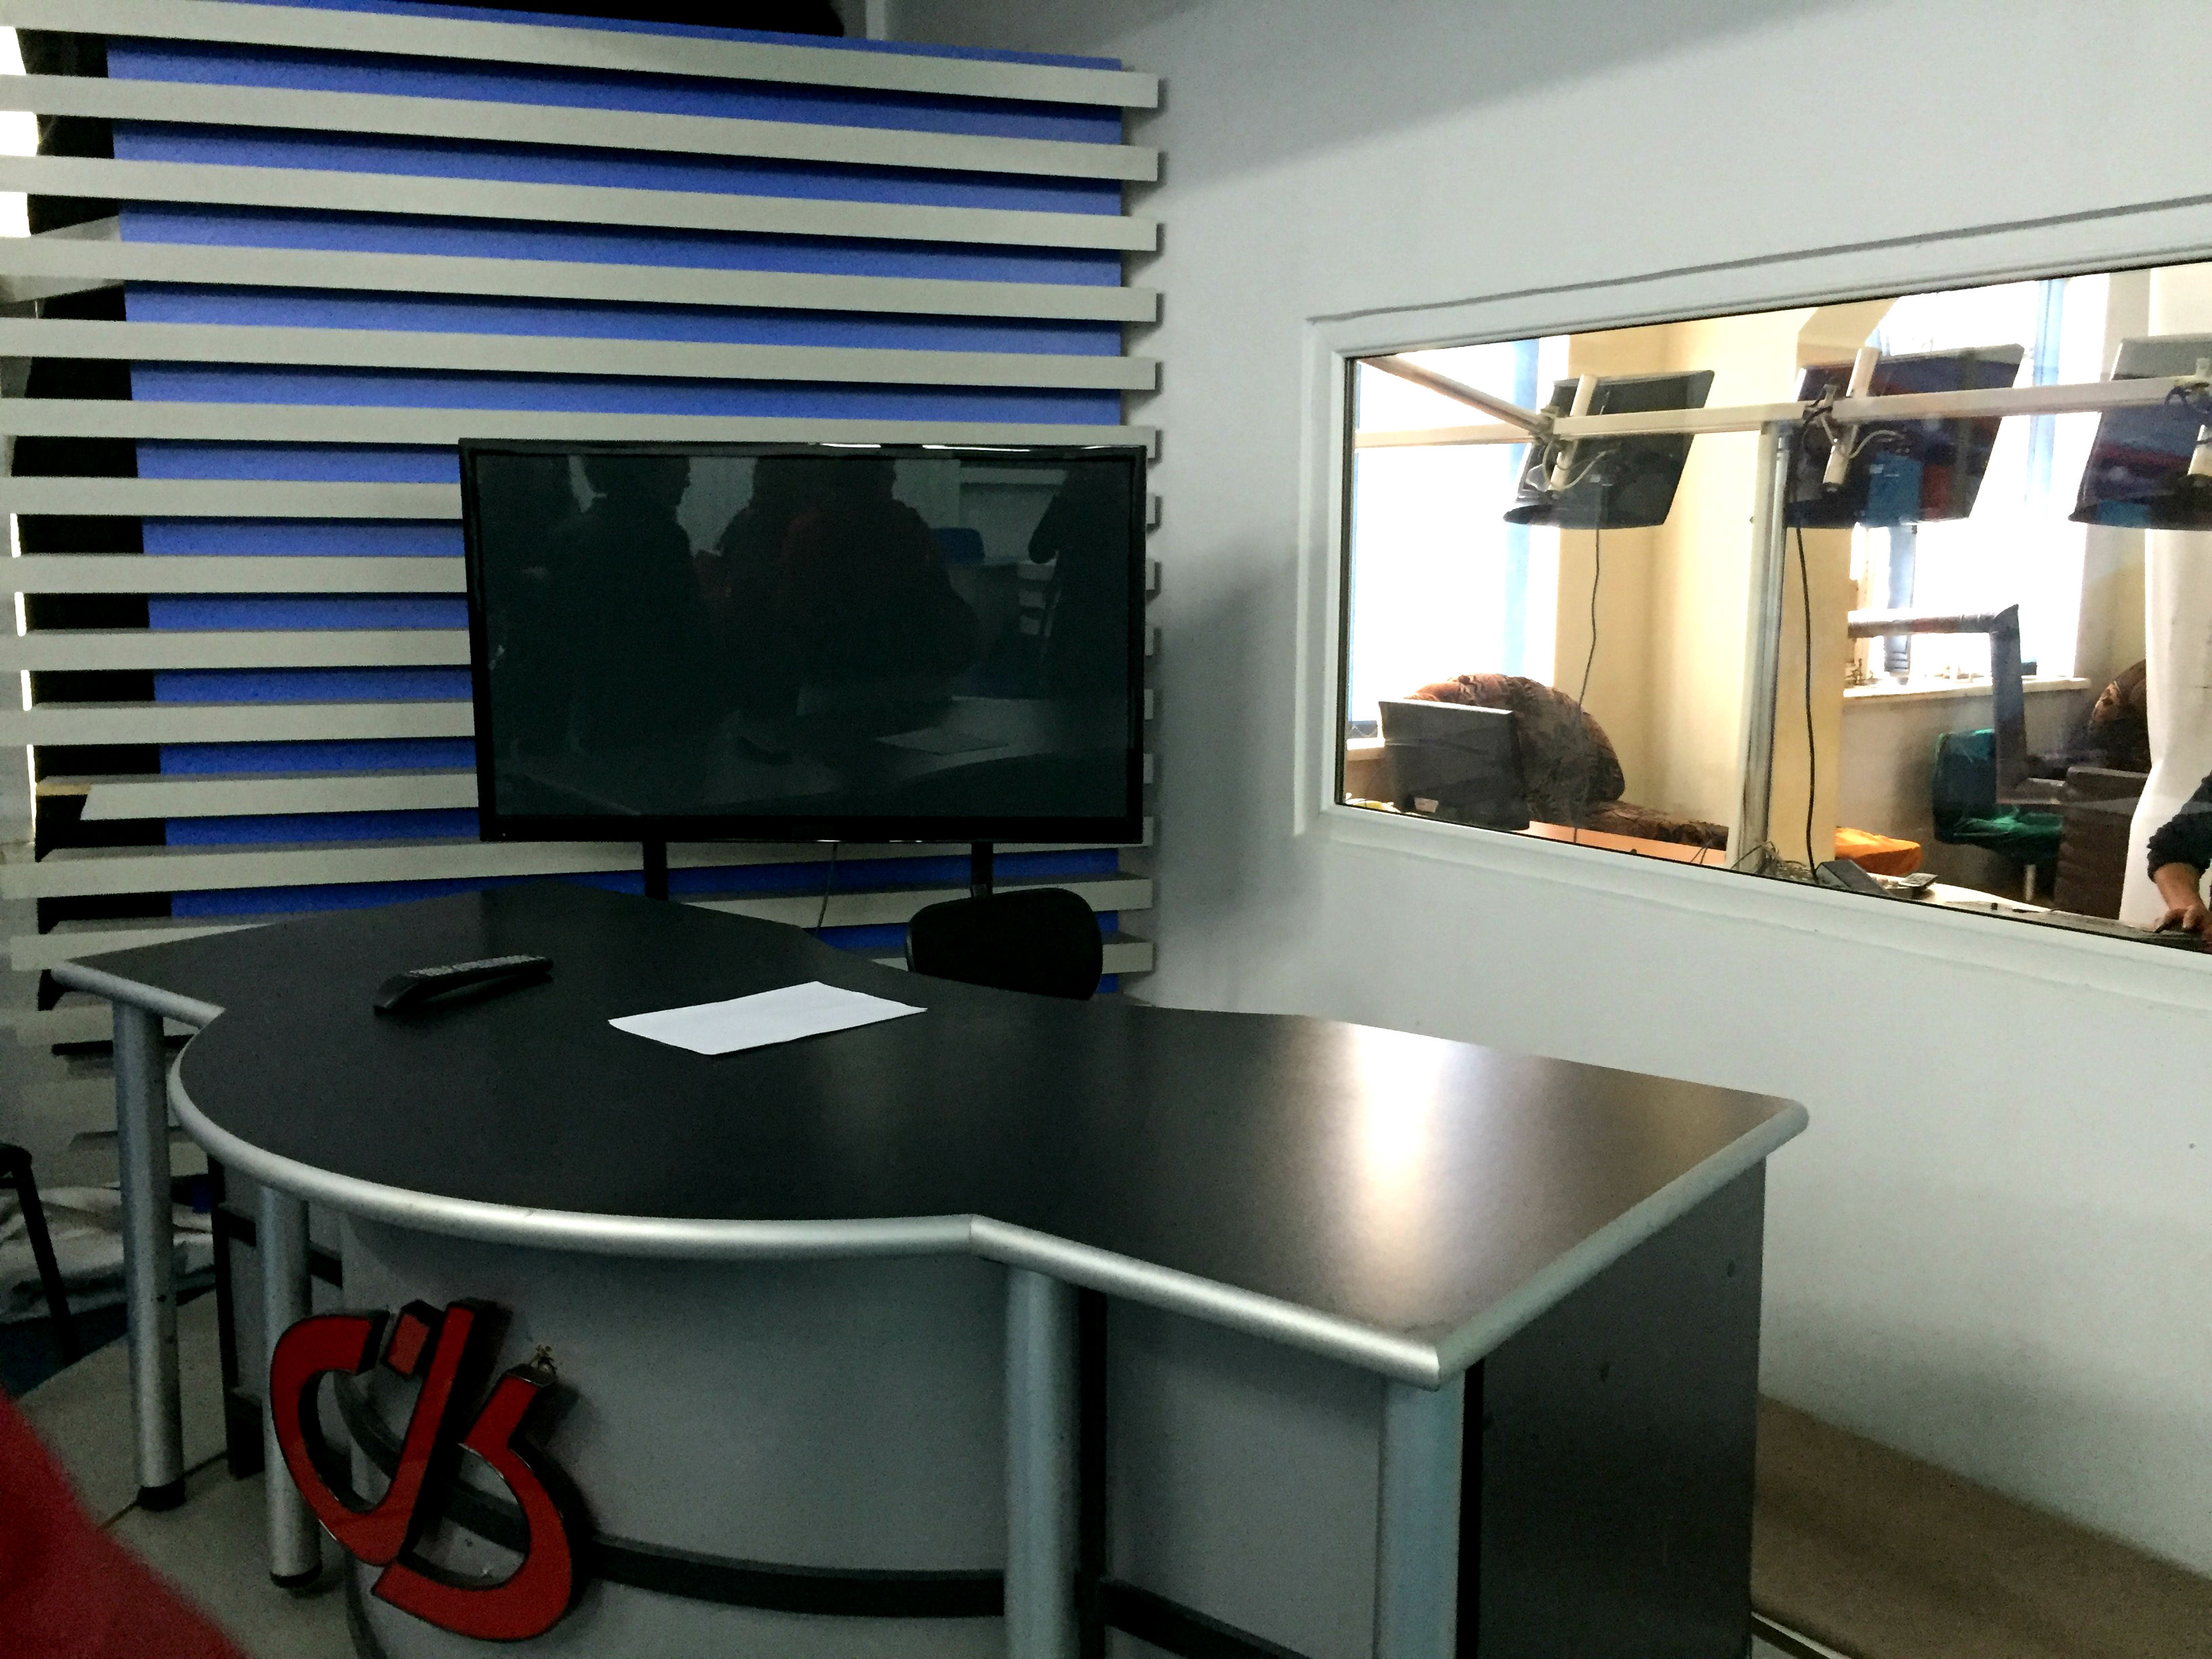 Tanamgzavri TV station's news broadcast studio